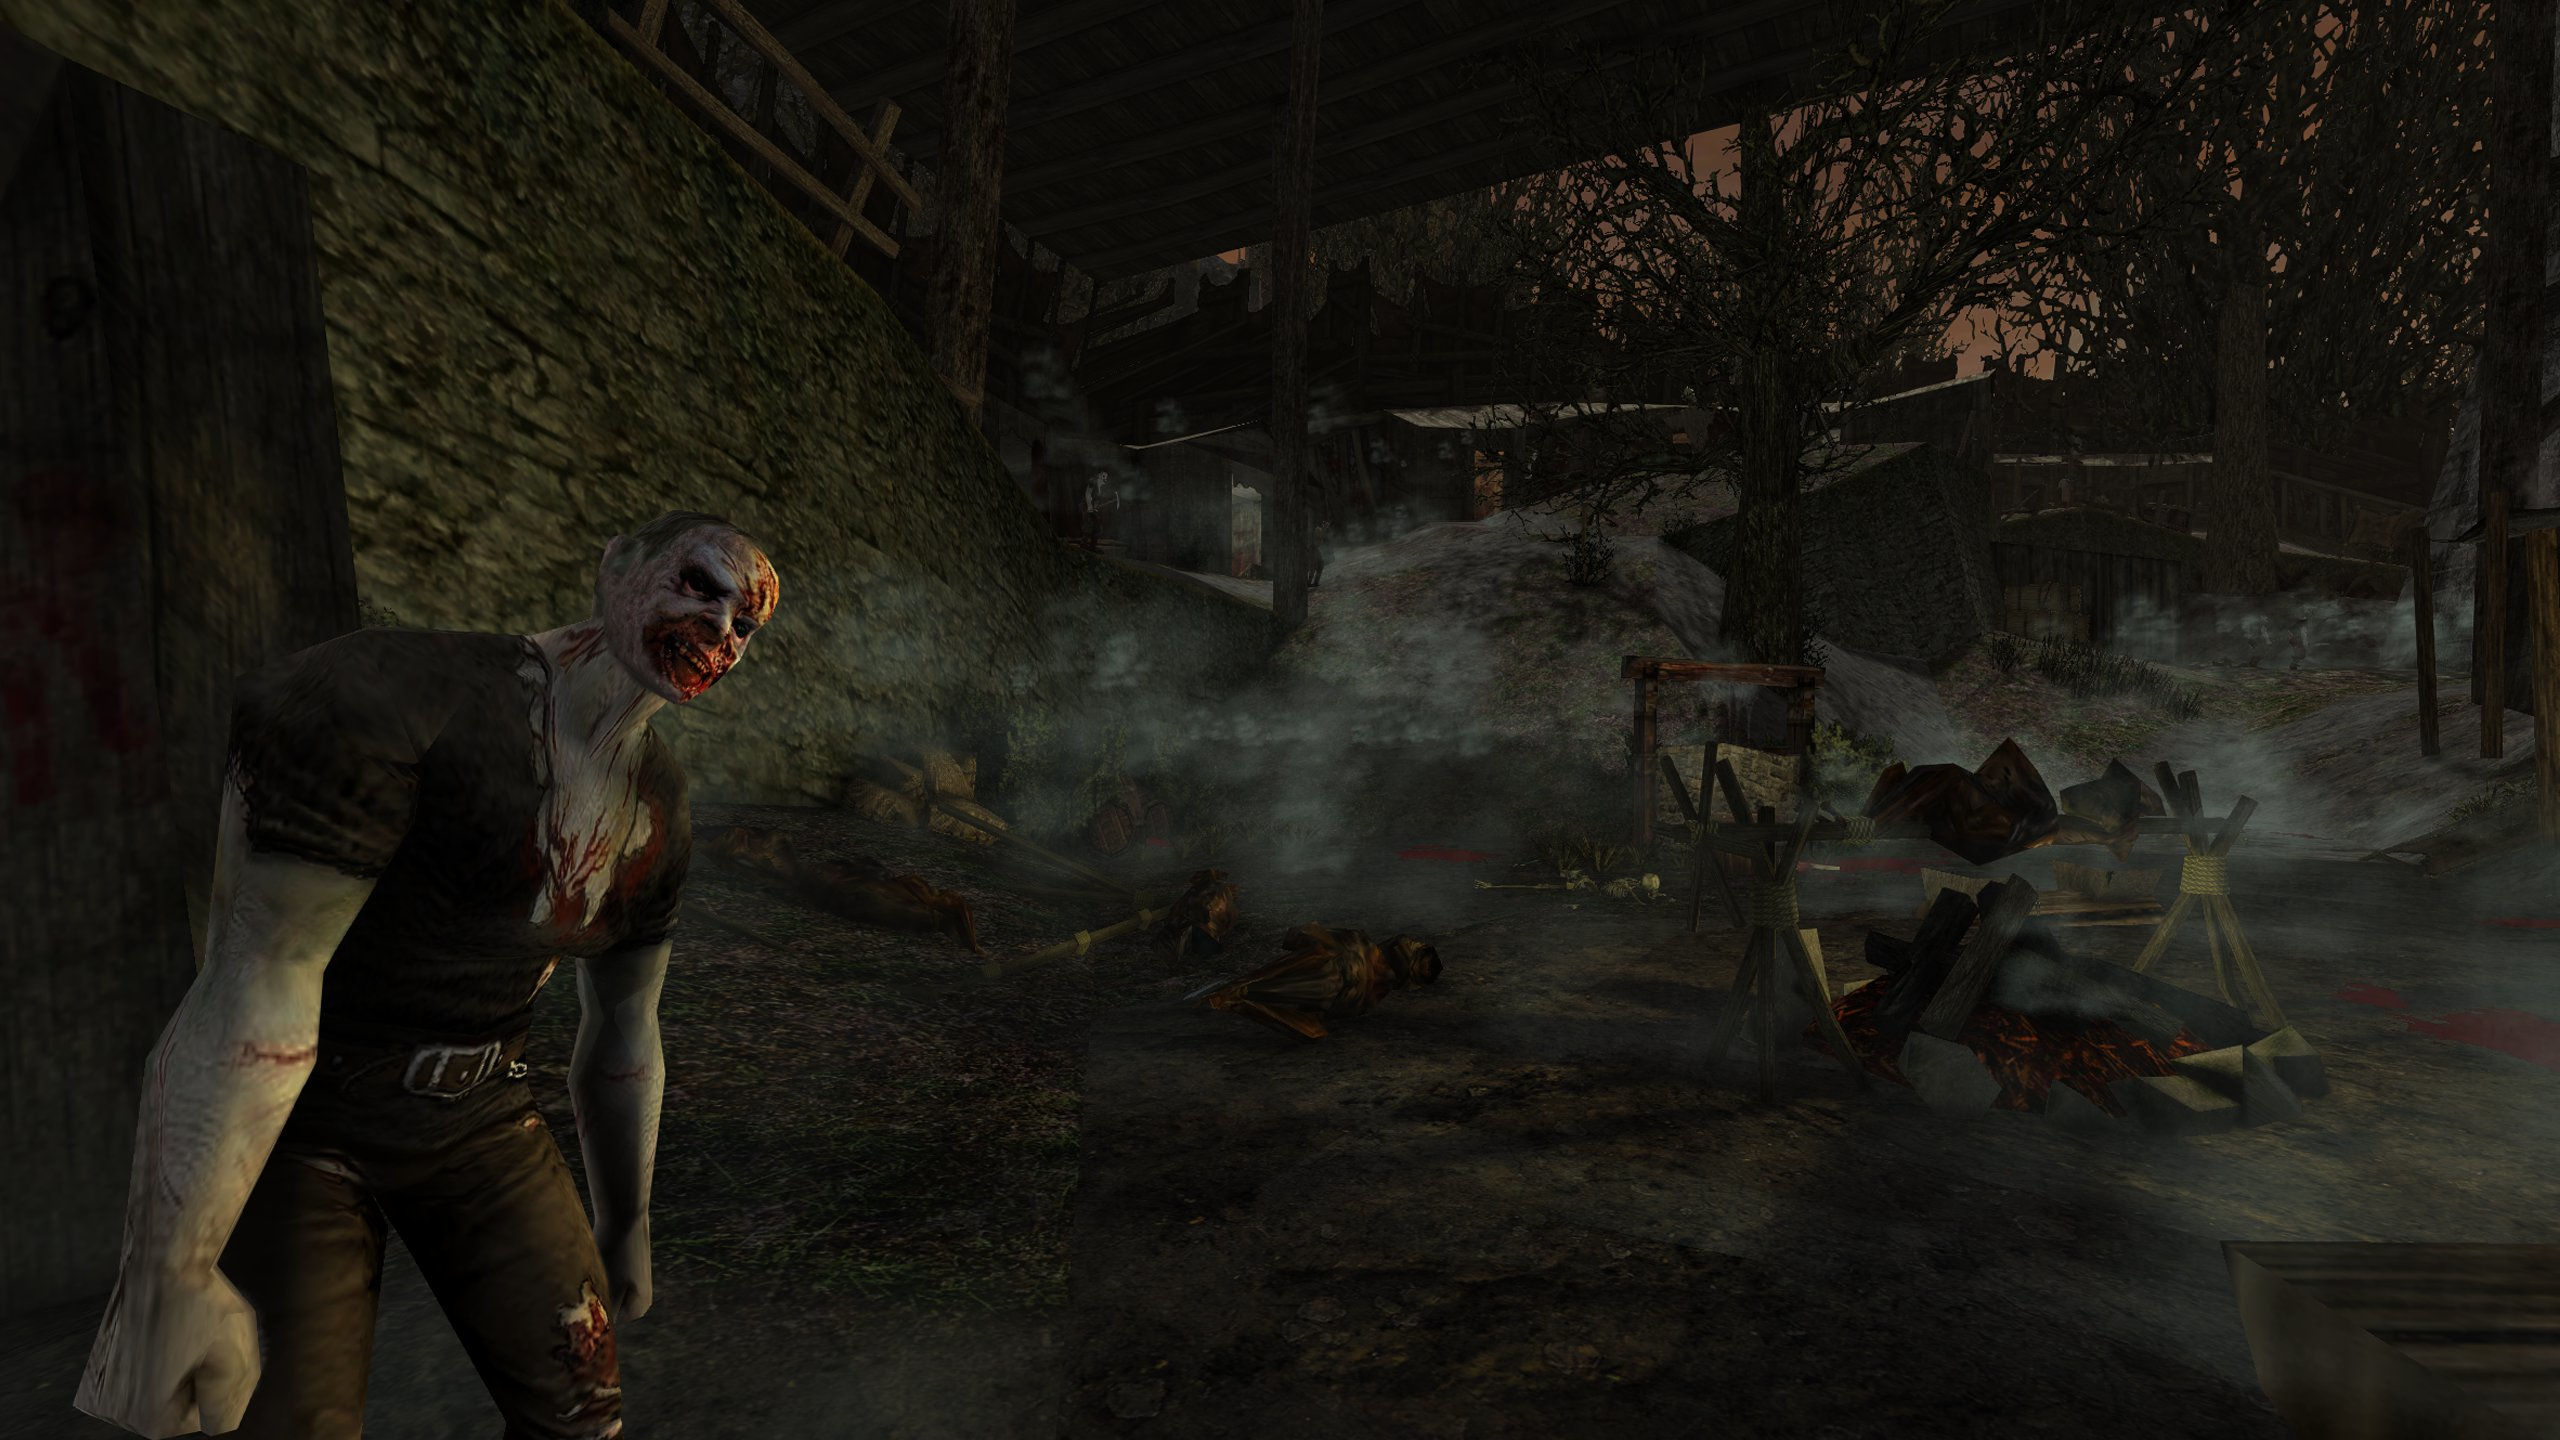 Screenshot aus der Gothic 1 Mod Dolina Zombie. Zu sehen ist das Alte Lager, welches in Trümmern liegt. Durch die Überreste des Alten Lagers streifen Zombies umher.